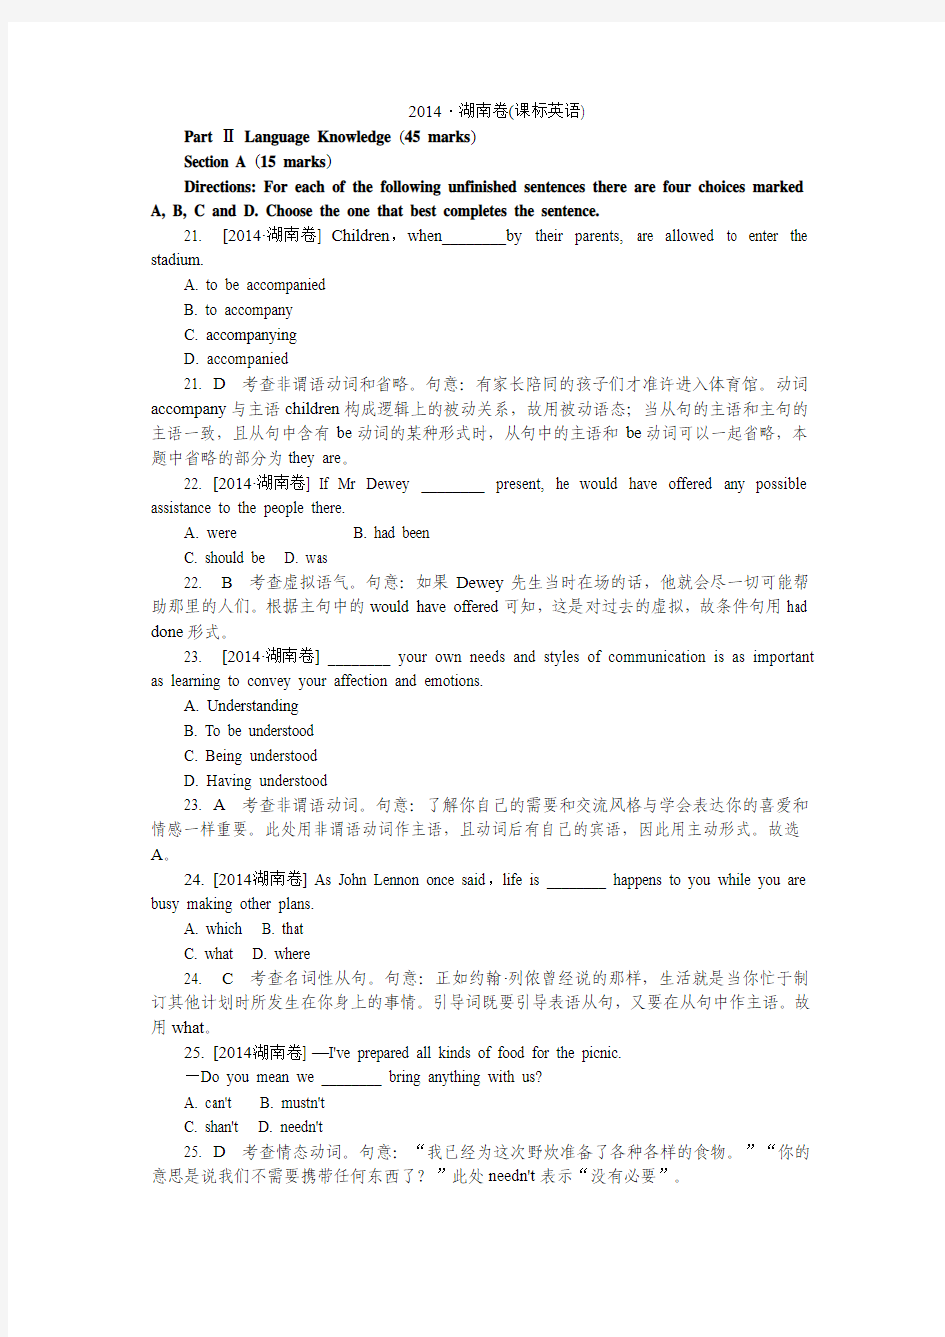 2014年高考真题(英语)湖南卷 纯Word版解析可编辑